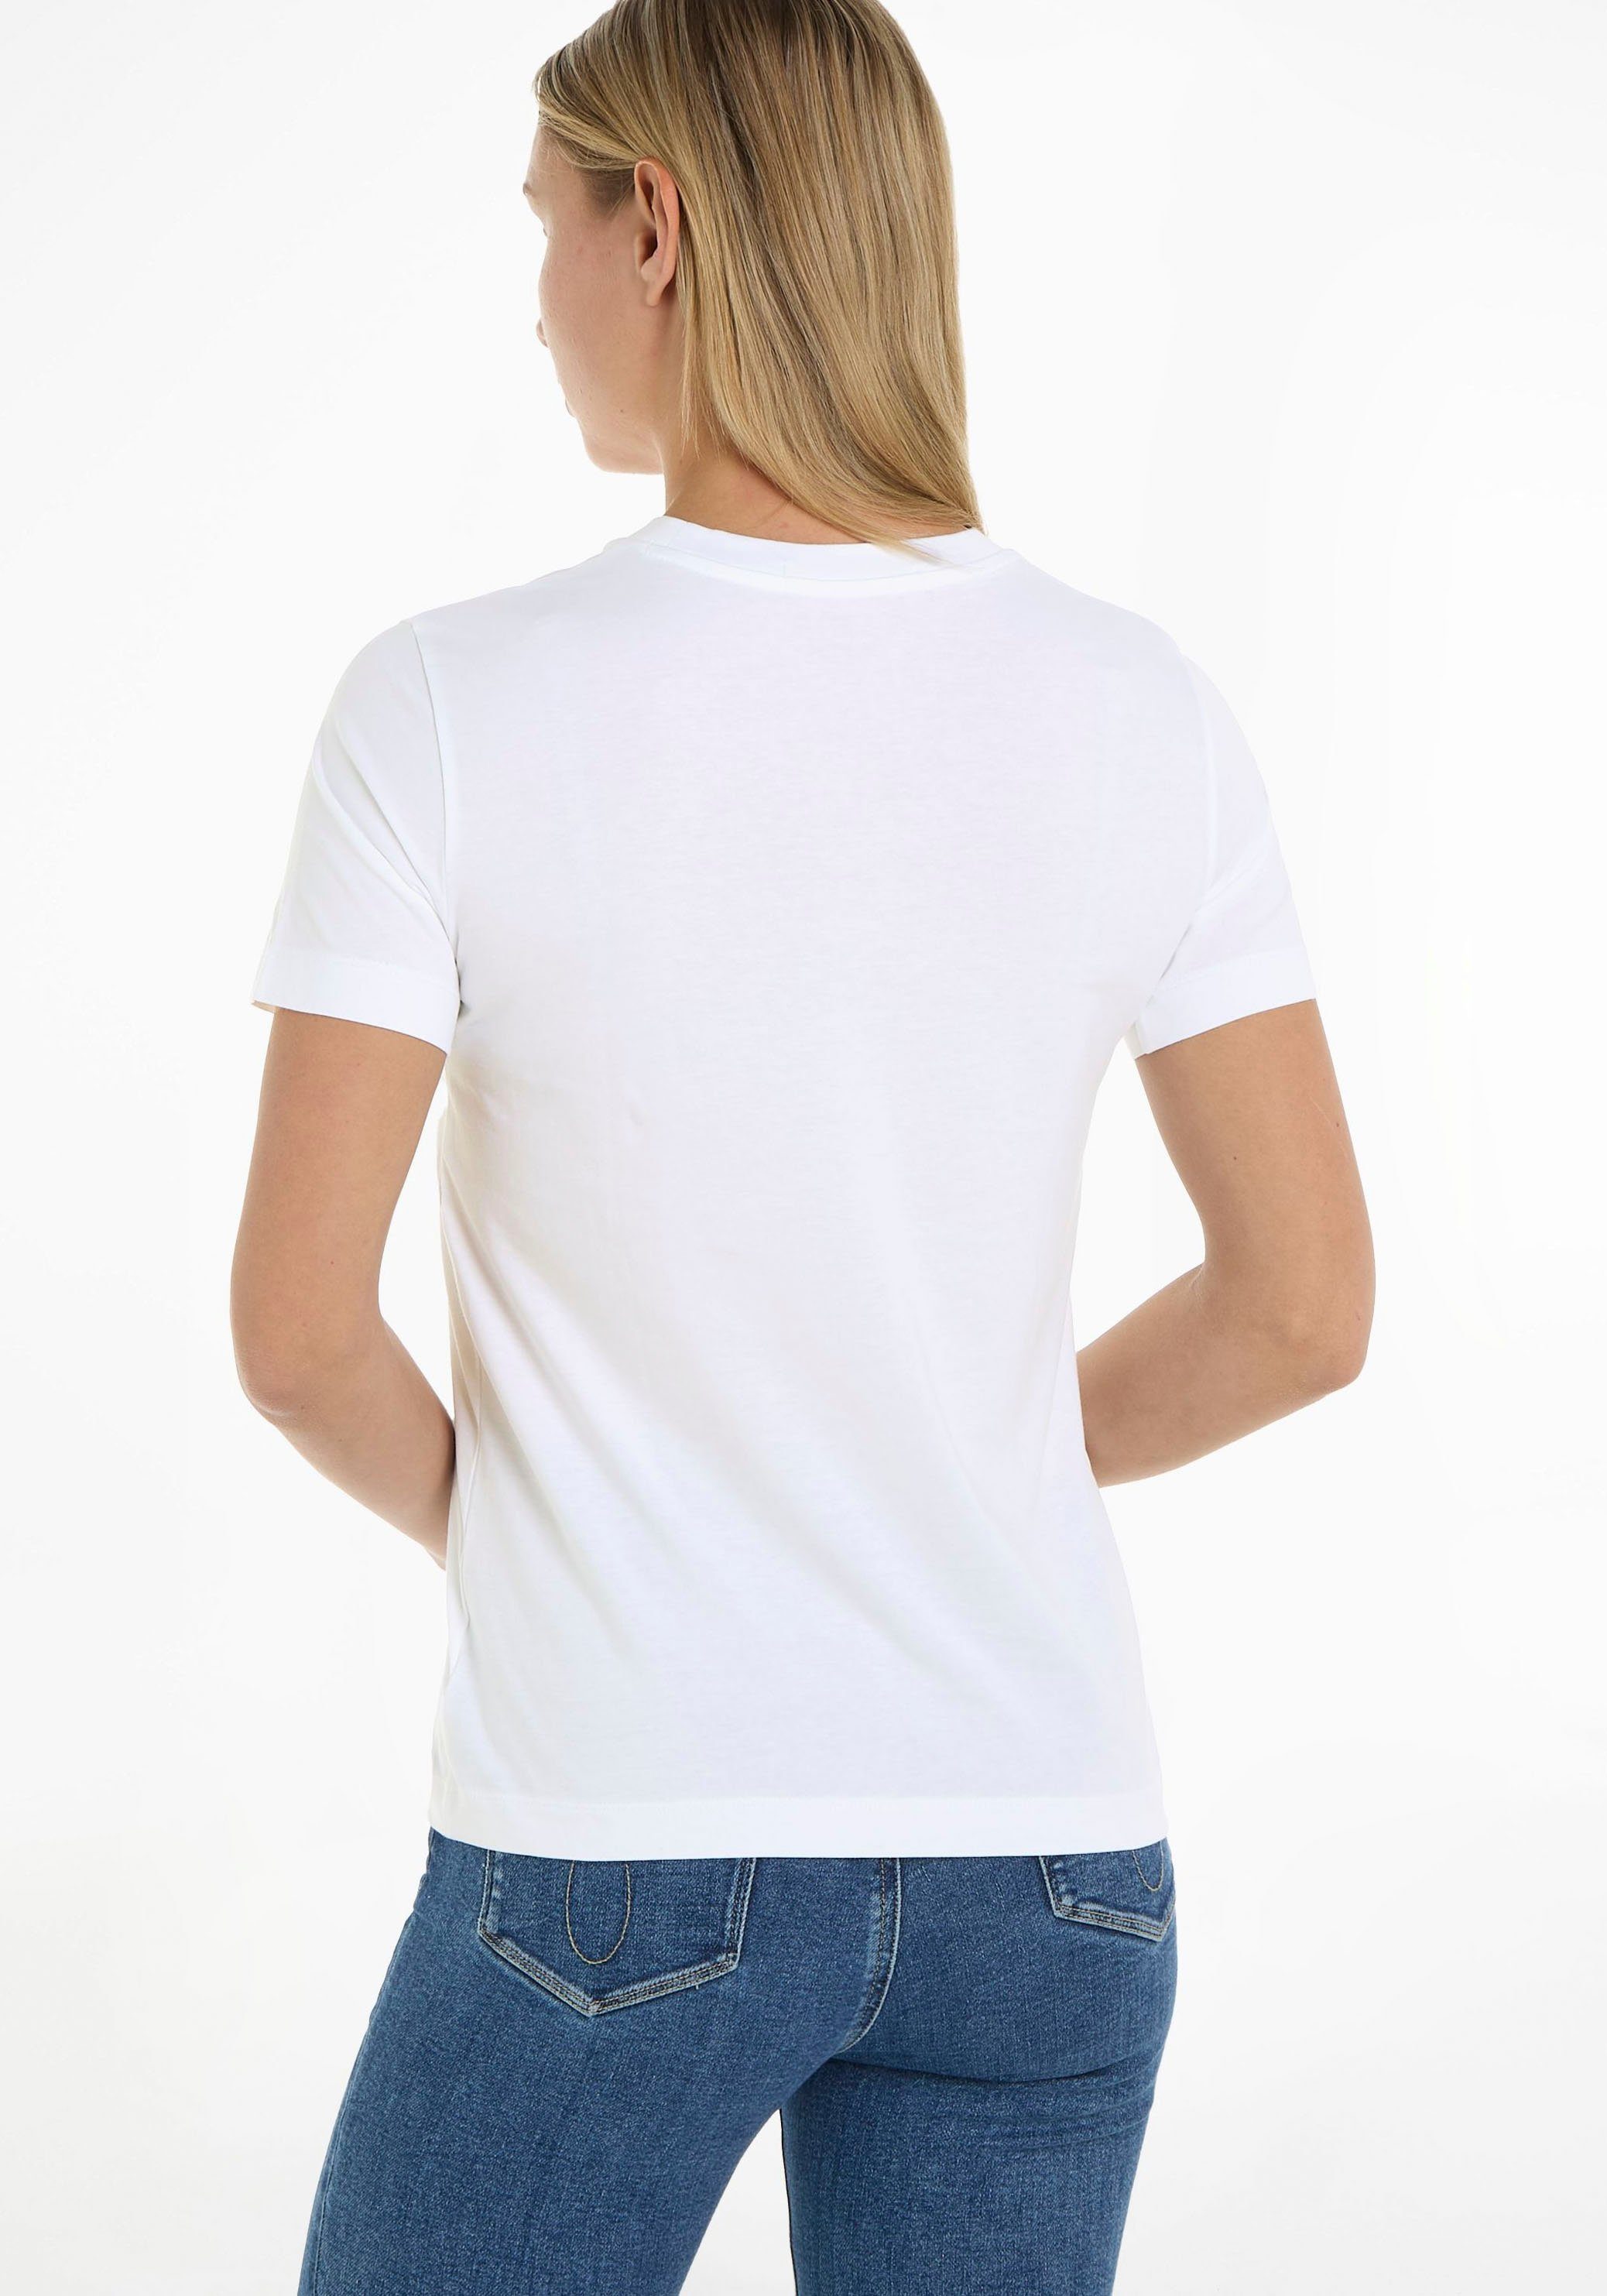 T-Shirt Klein Jeans Baumwolle reiner Calvin aus weiß